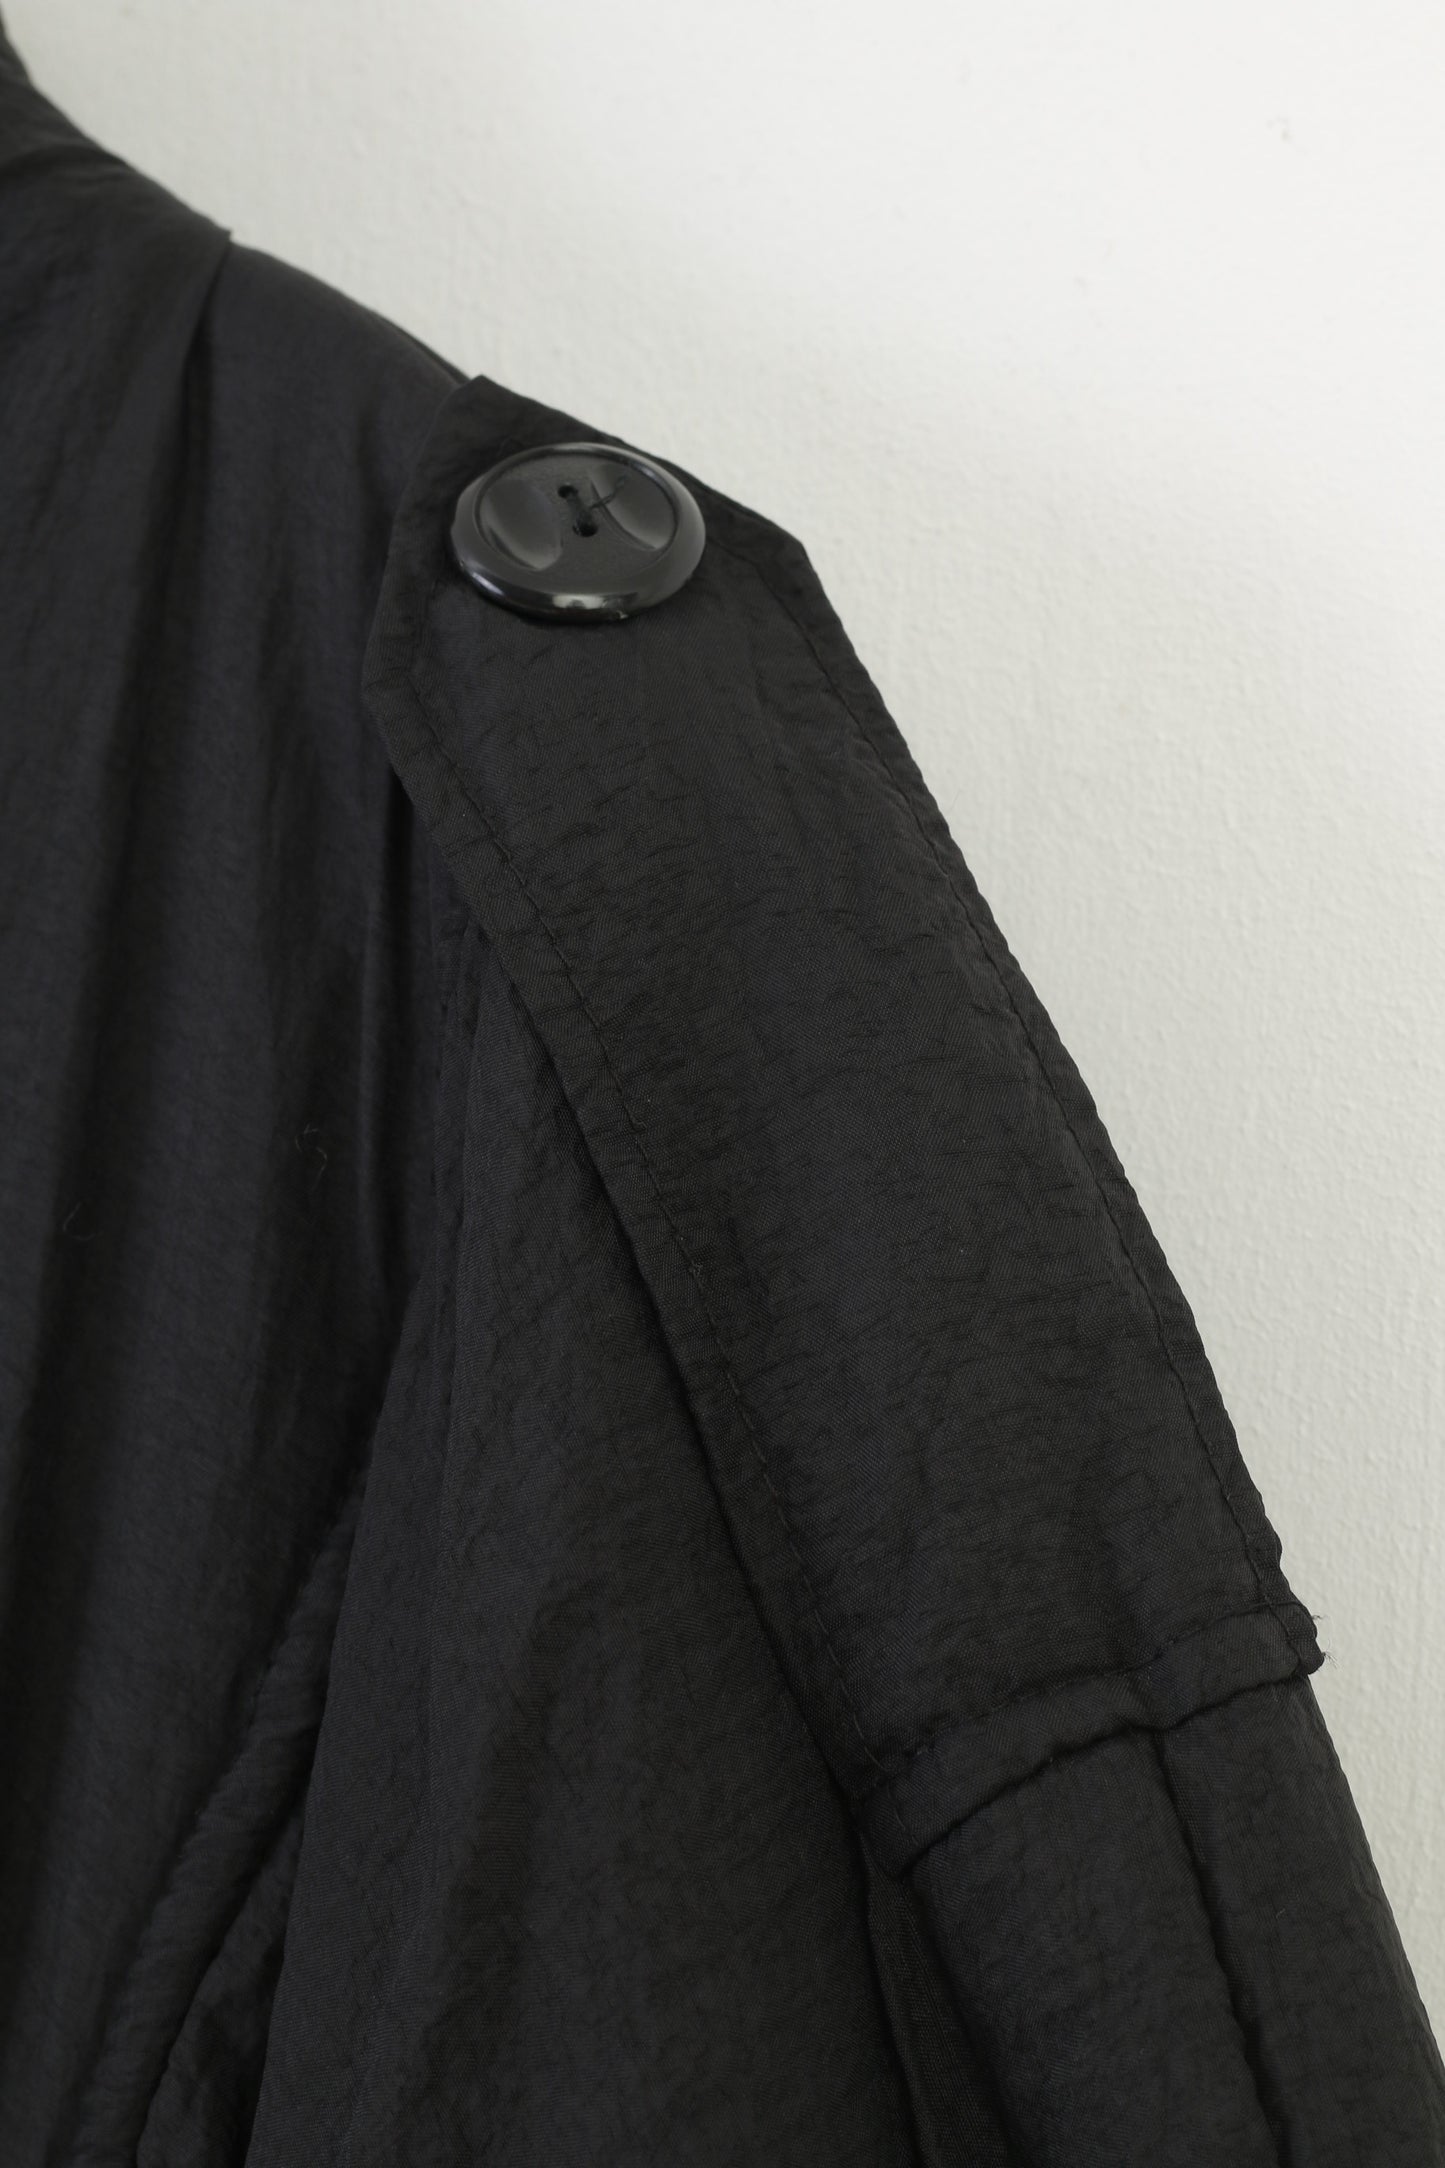 Cappotto Starlike da donna 3XL Parte superiore della giacca con tasche imbottite con colletto vintage e fondo nero